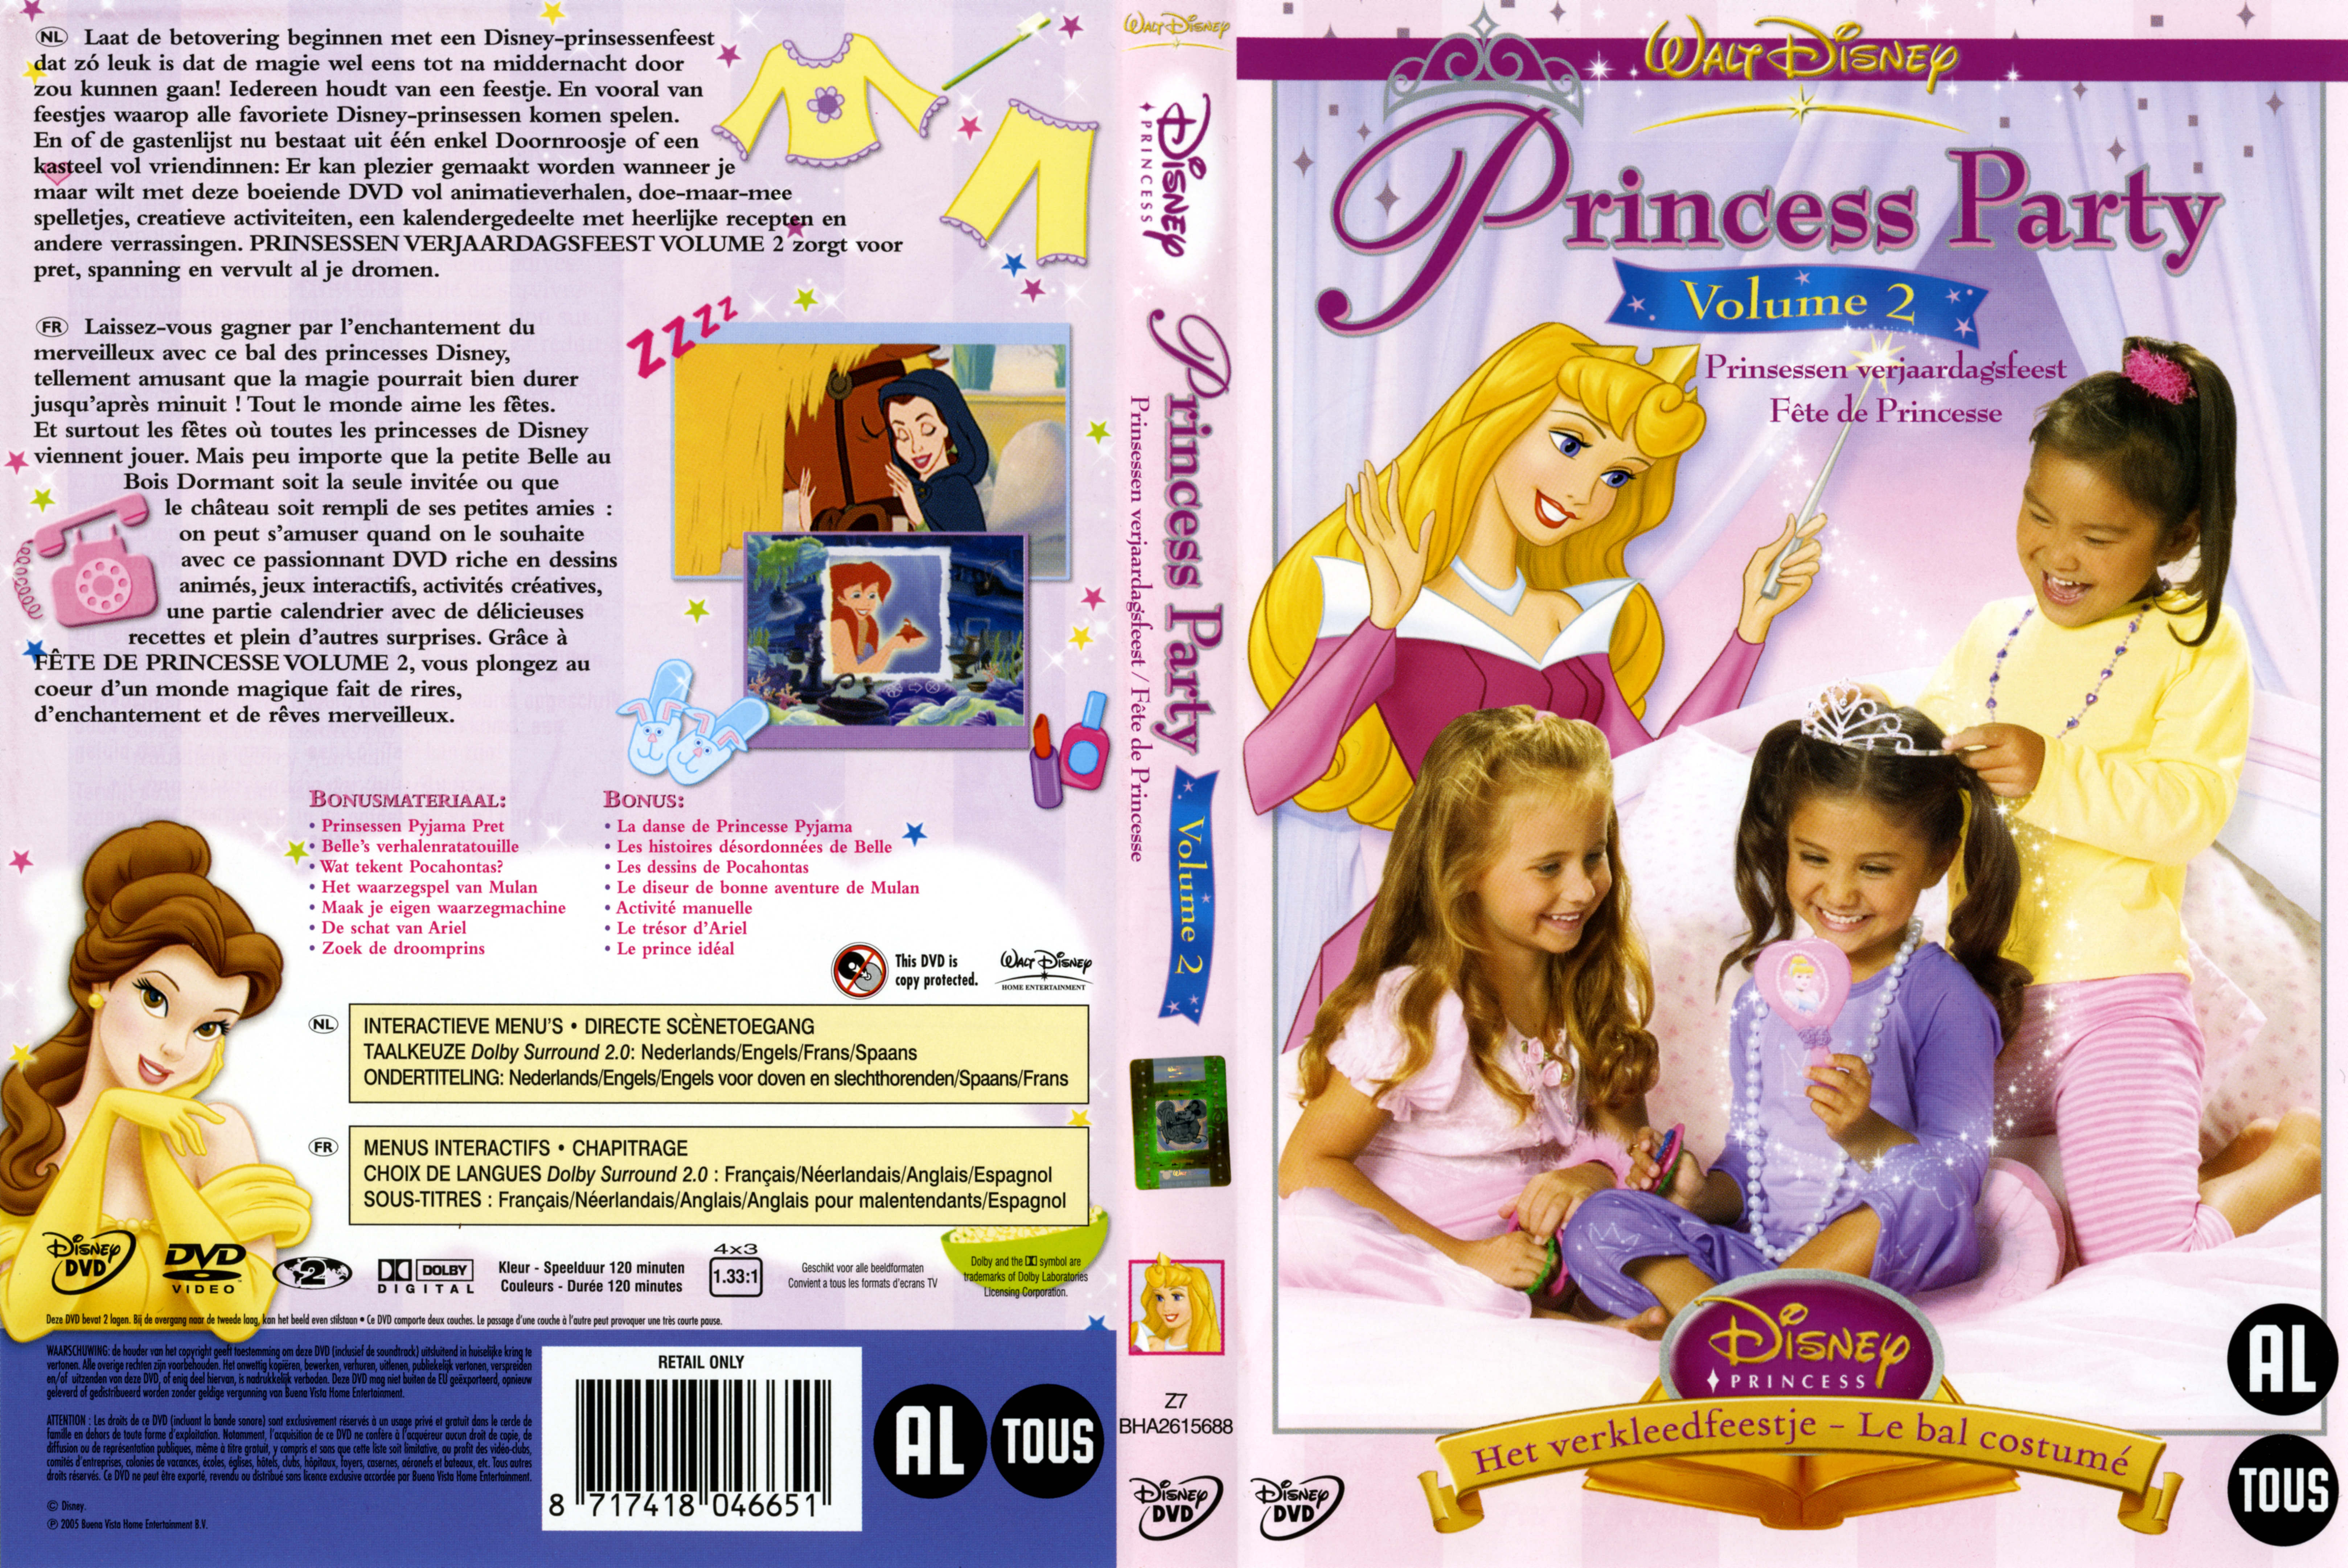 Jaquette DVD Fete de Princesse vol 2 v2